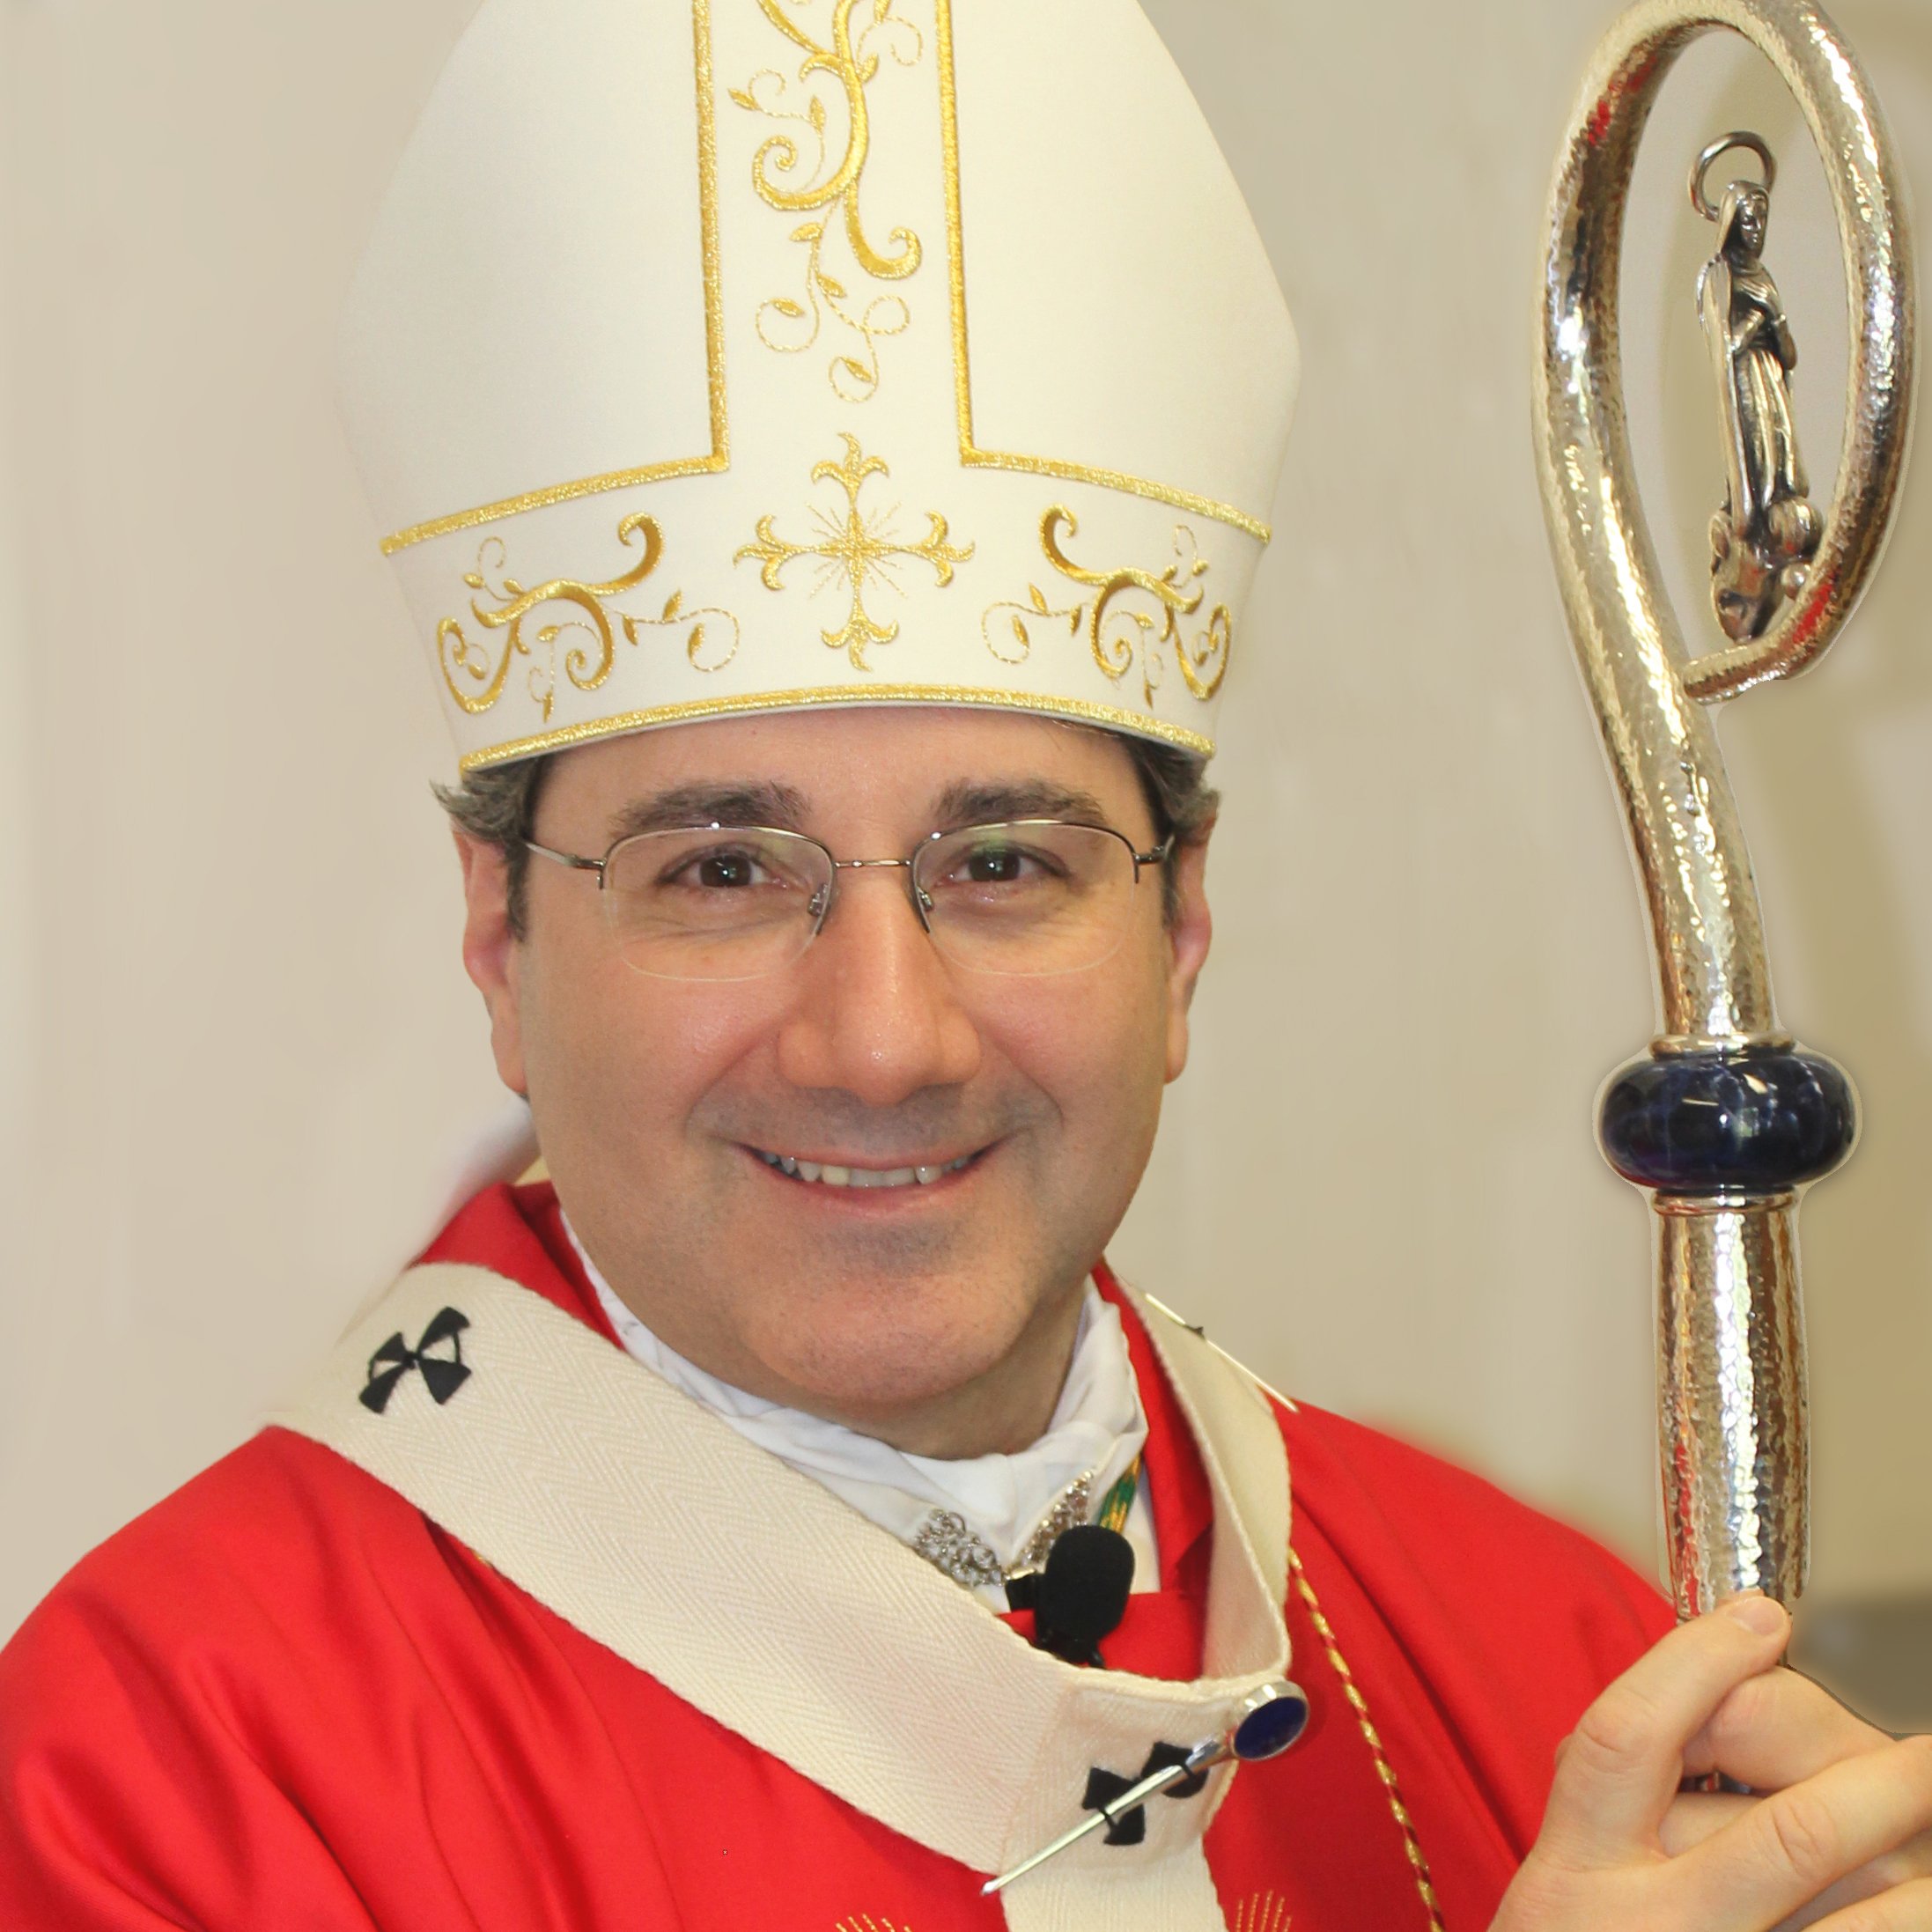 Archbishop Leo visits Saint Louis de France Parish